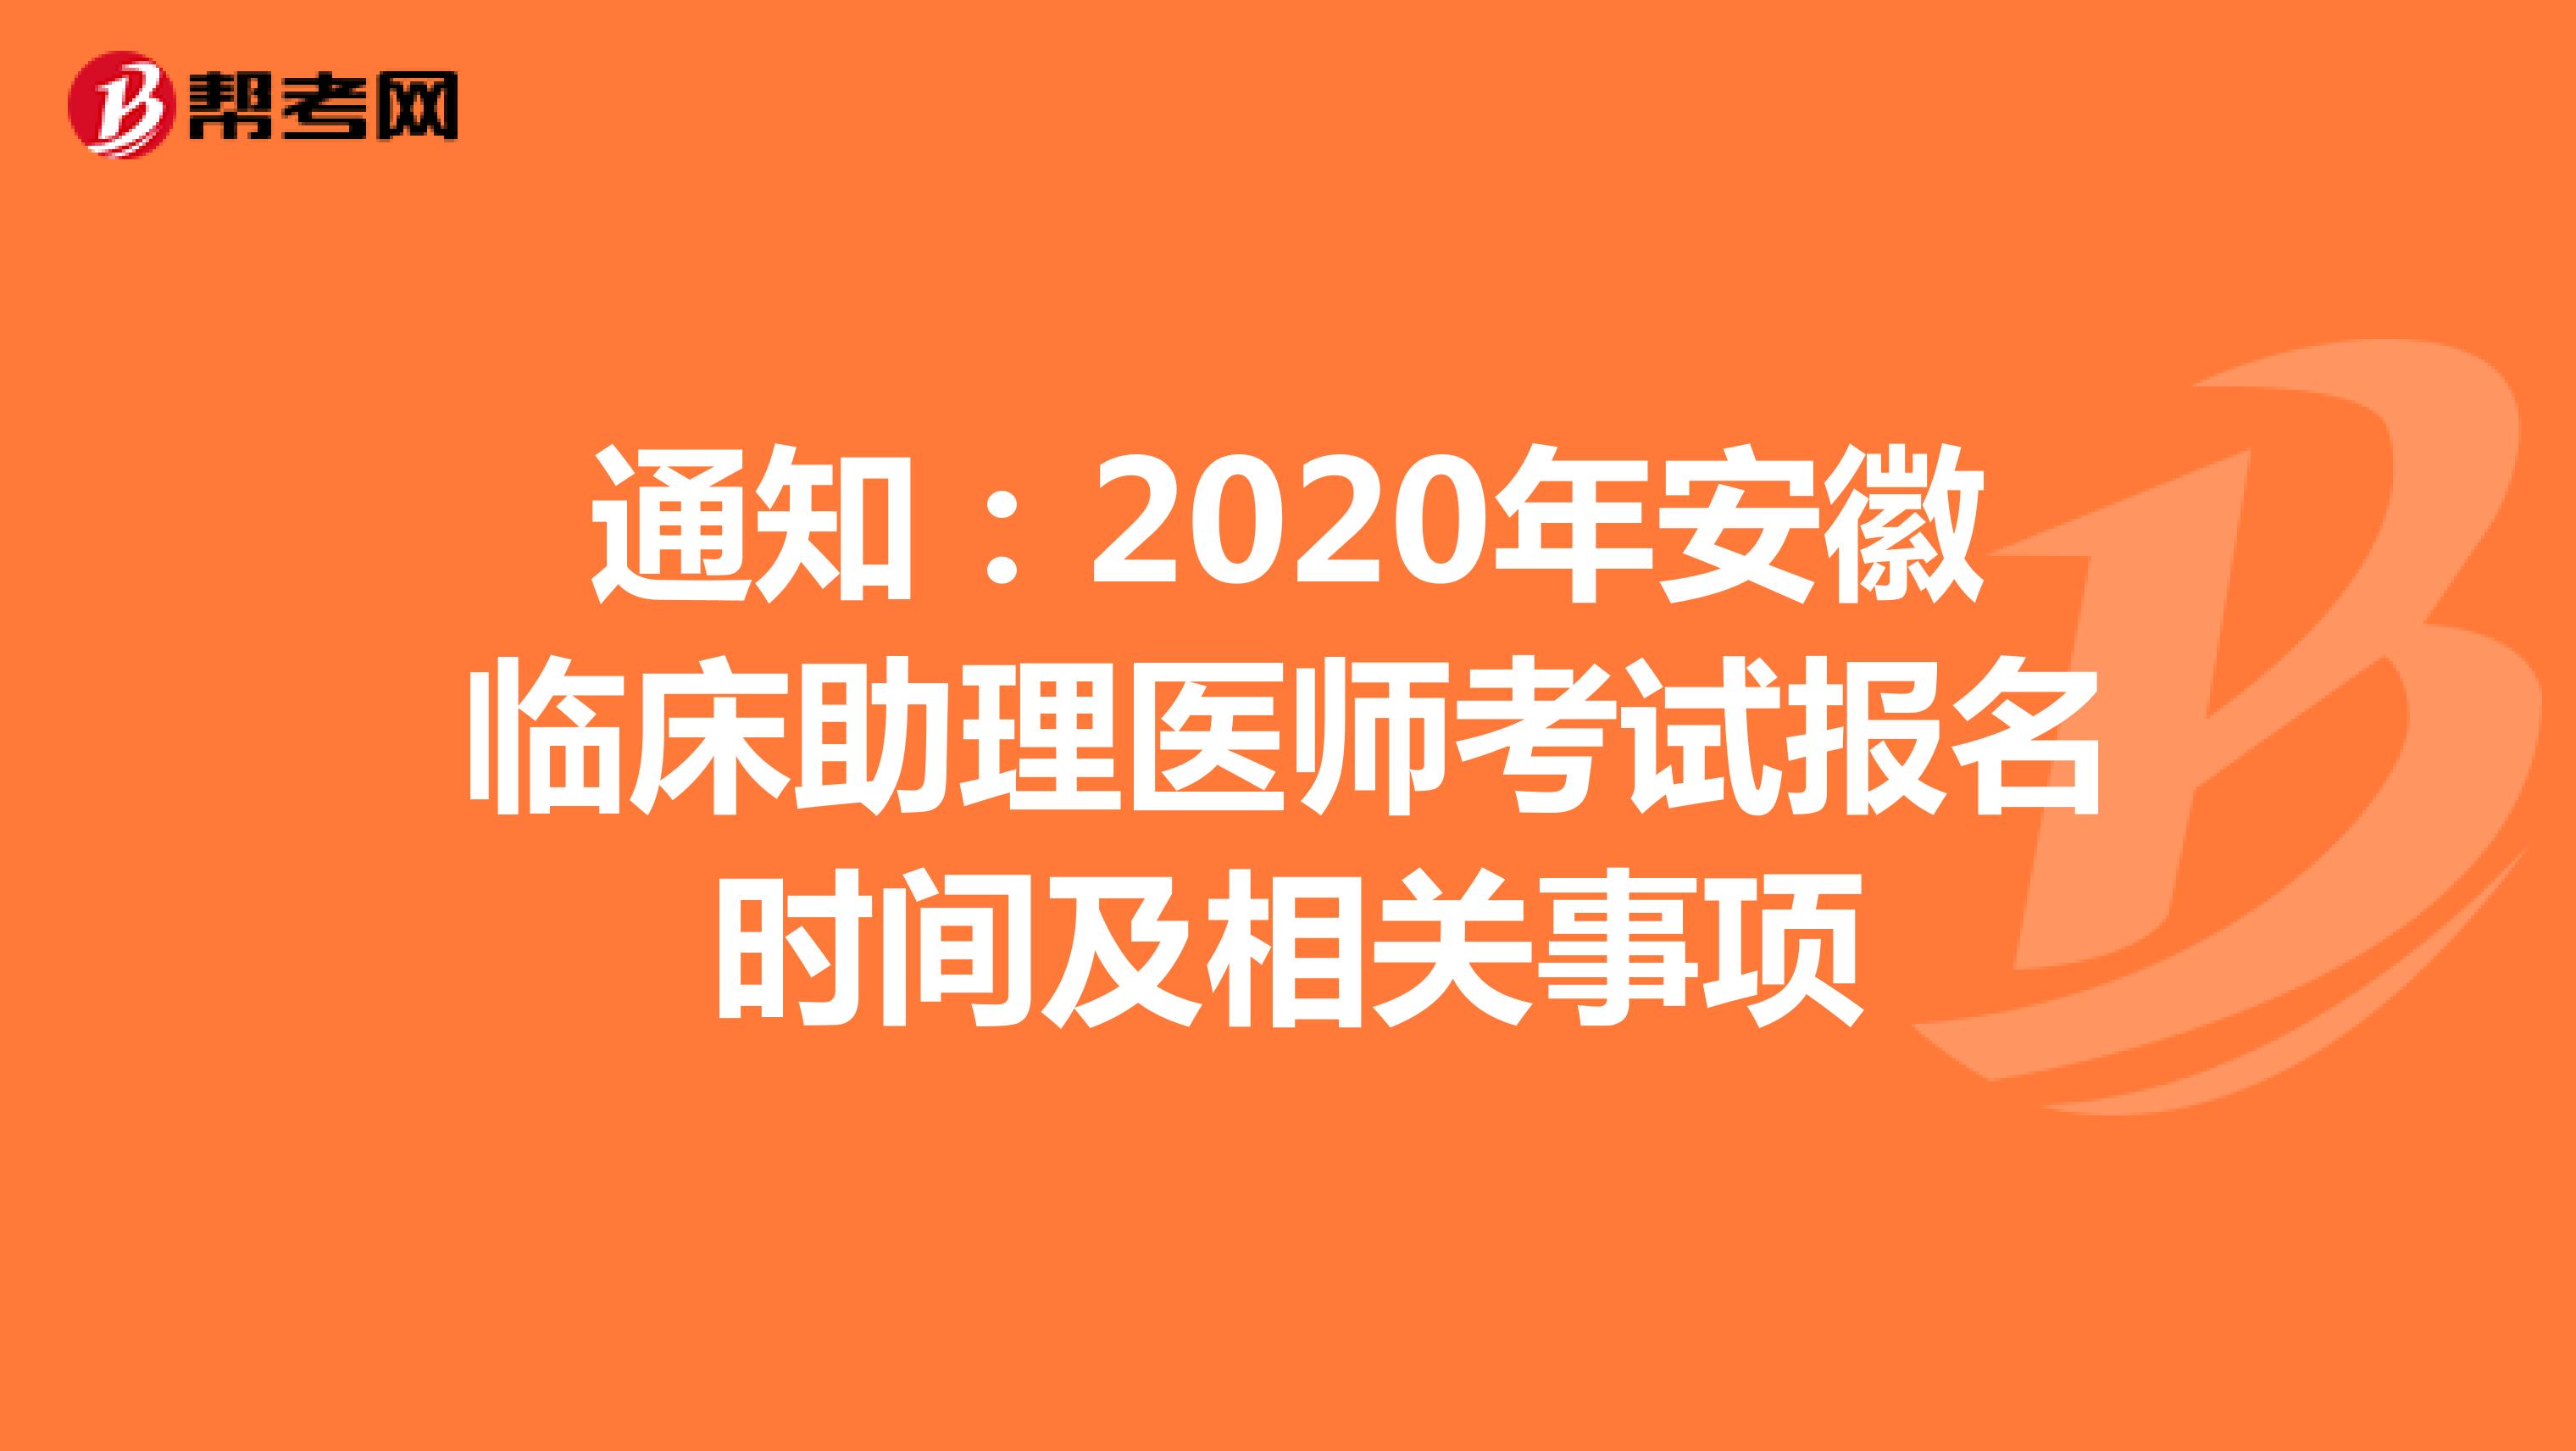 通知：2021年安徽临床助理医师考试报名时间及相关事项